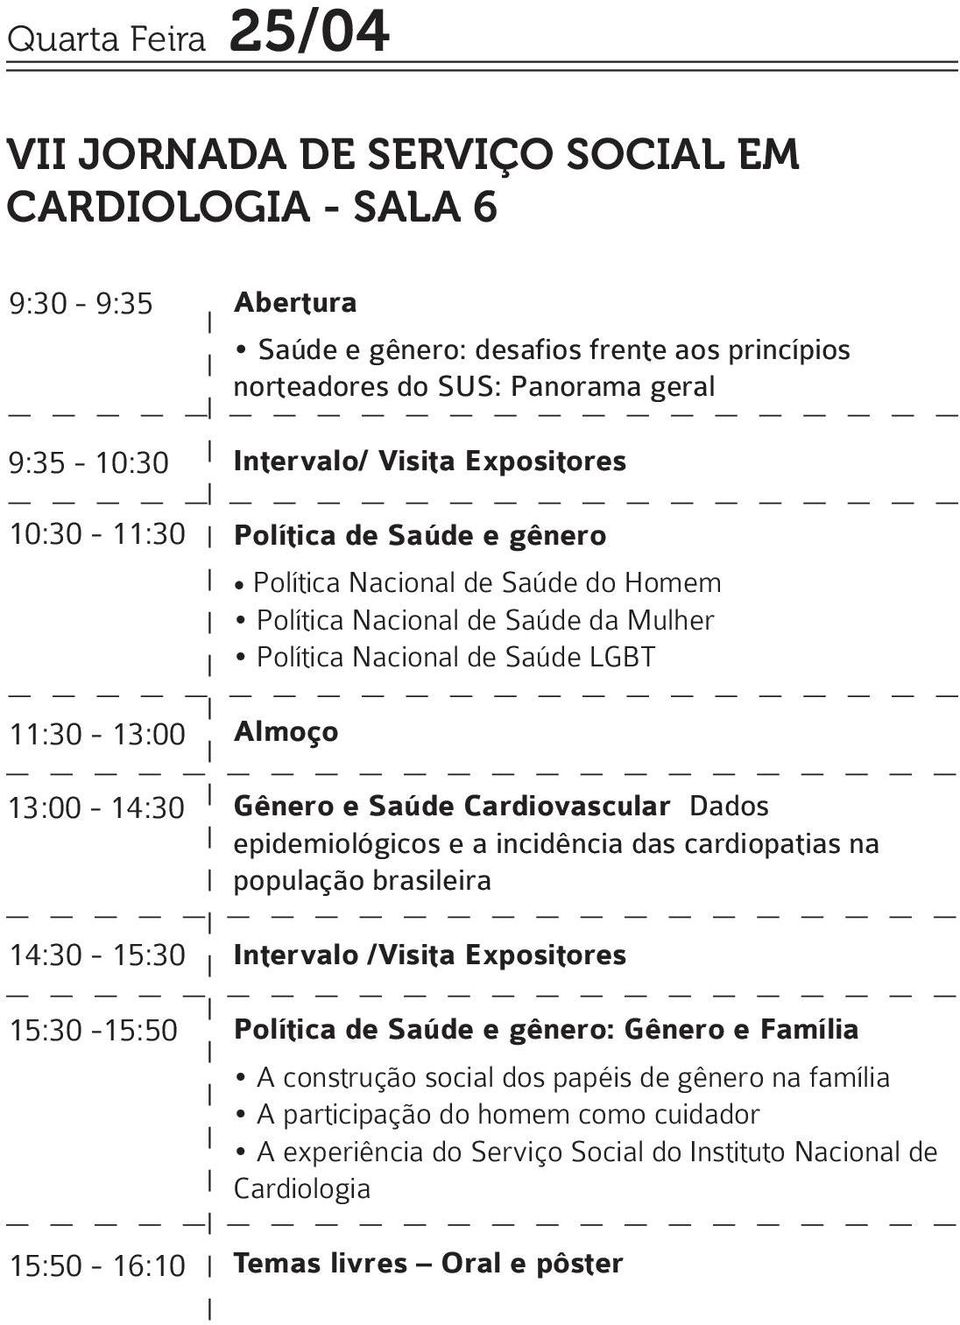 Política Nacional de Saúde LGBT Almoço Gênero e Saúde Cardiovascular Dados epidemiológicos e a incidência das cardiopatias na população brasileira Intervalo /Visita Expositores Política de Saúde e